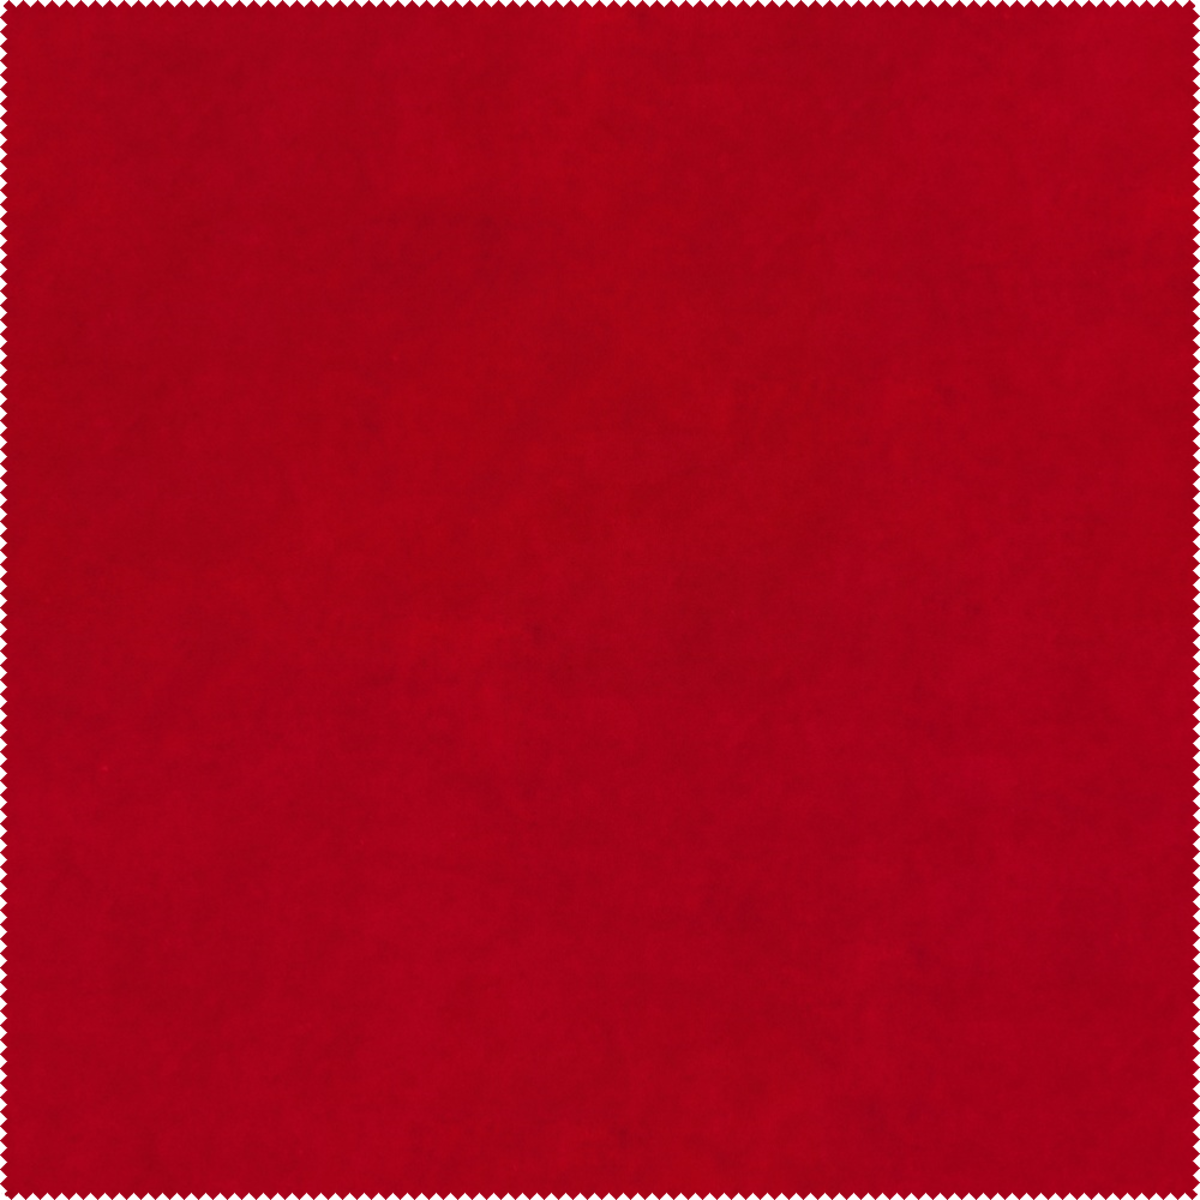 Bellagio 08 Aquaclean to tkanina stosowana na kanapy, narożniki czy też poduszki. Głęboka rubinowa barwa i intrygujący splot to jej główne cechy charakterystyczne.